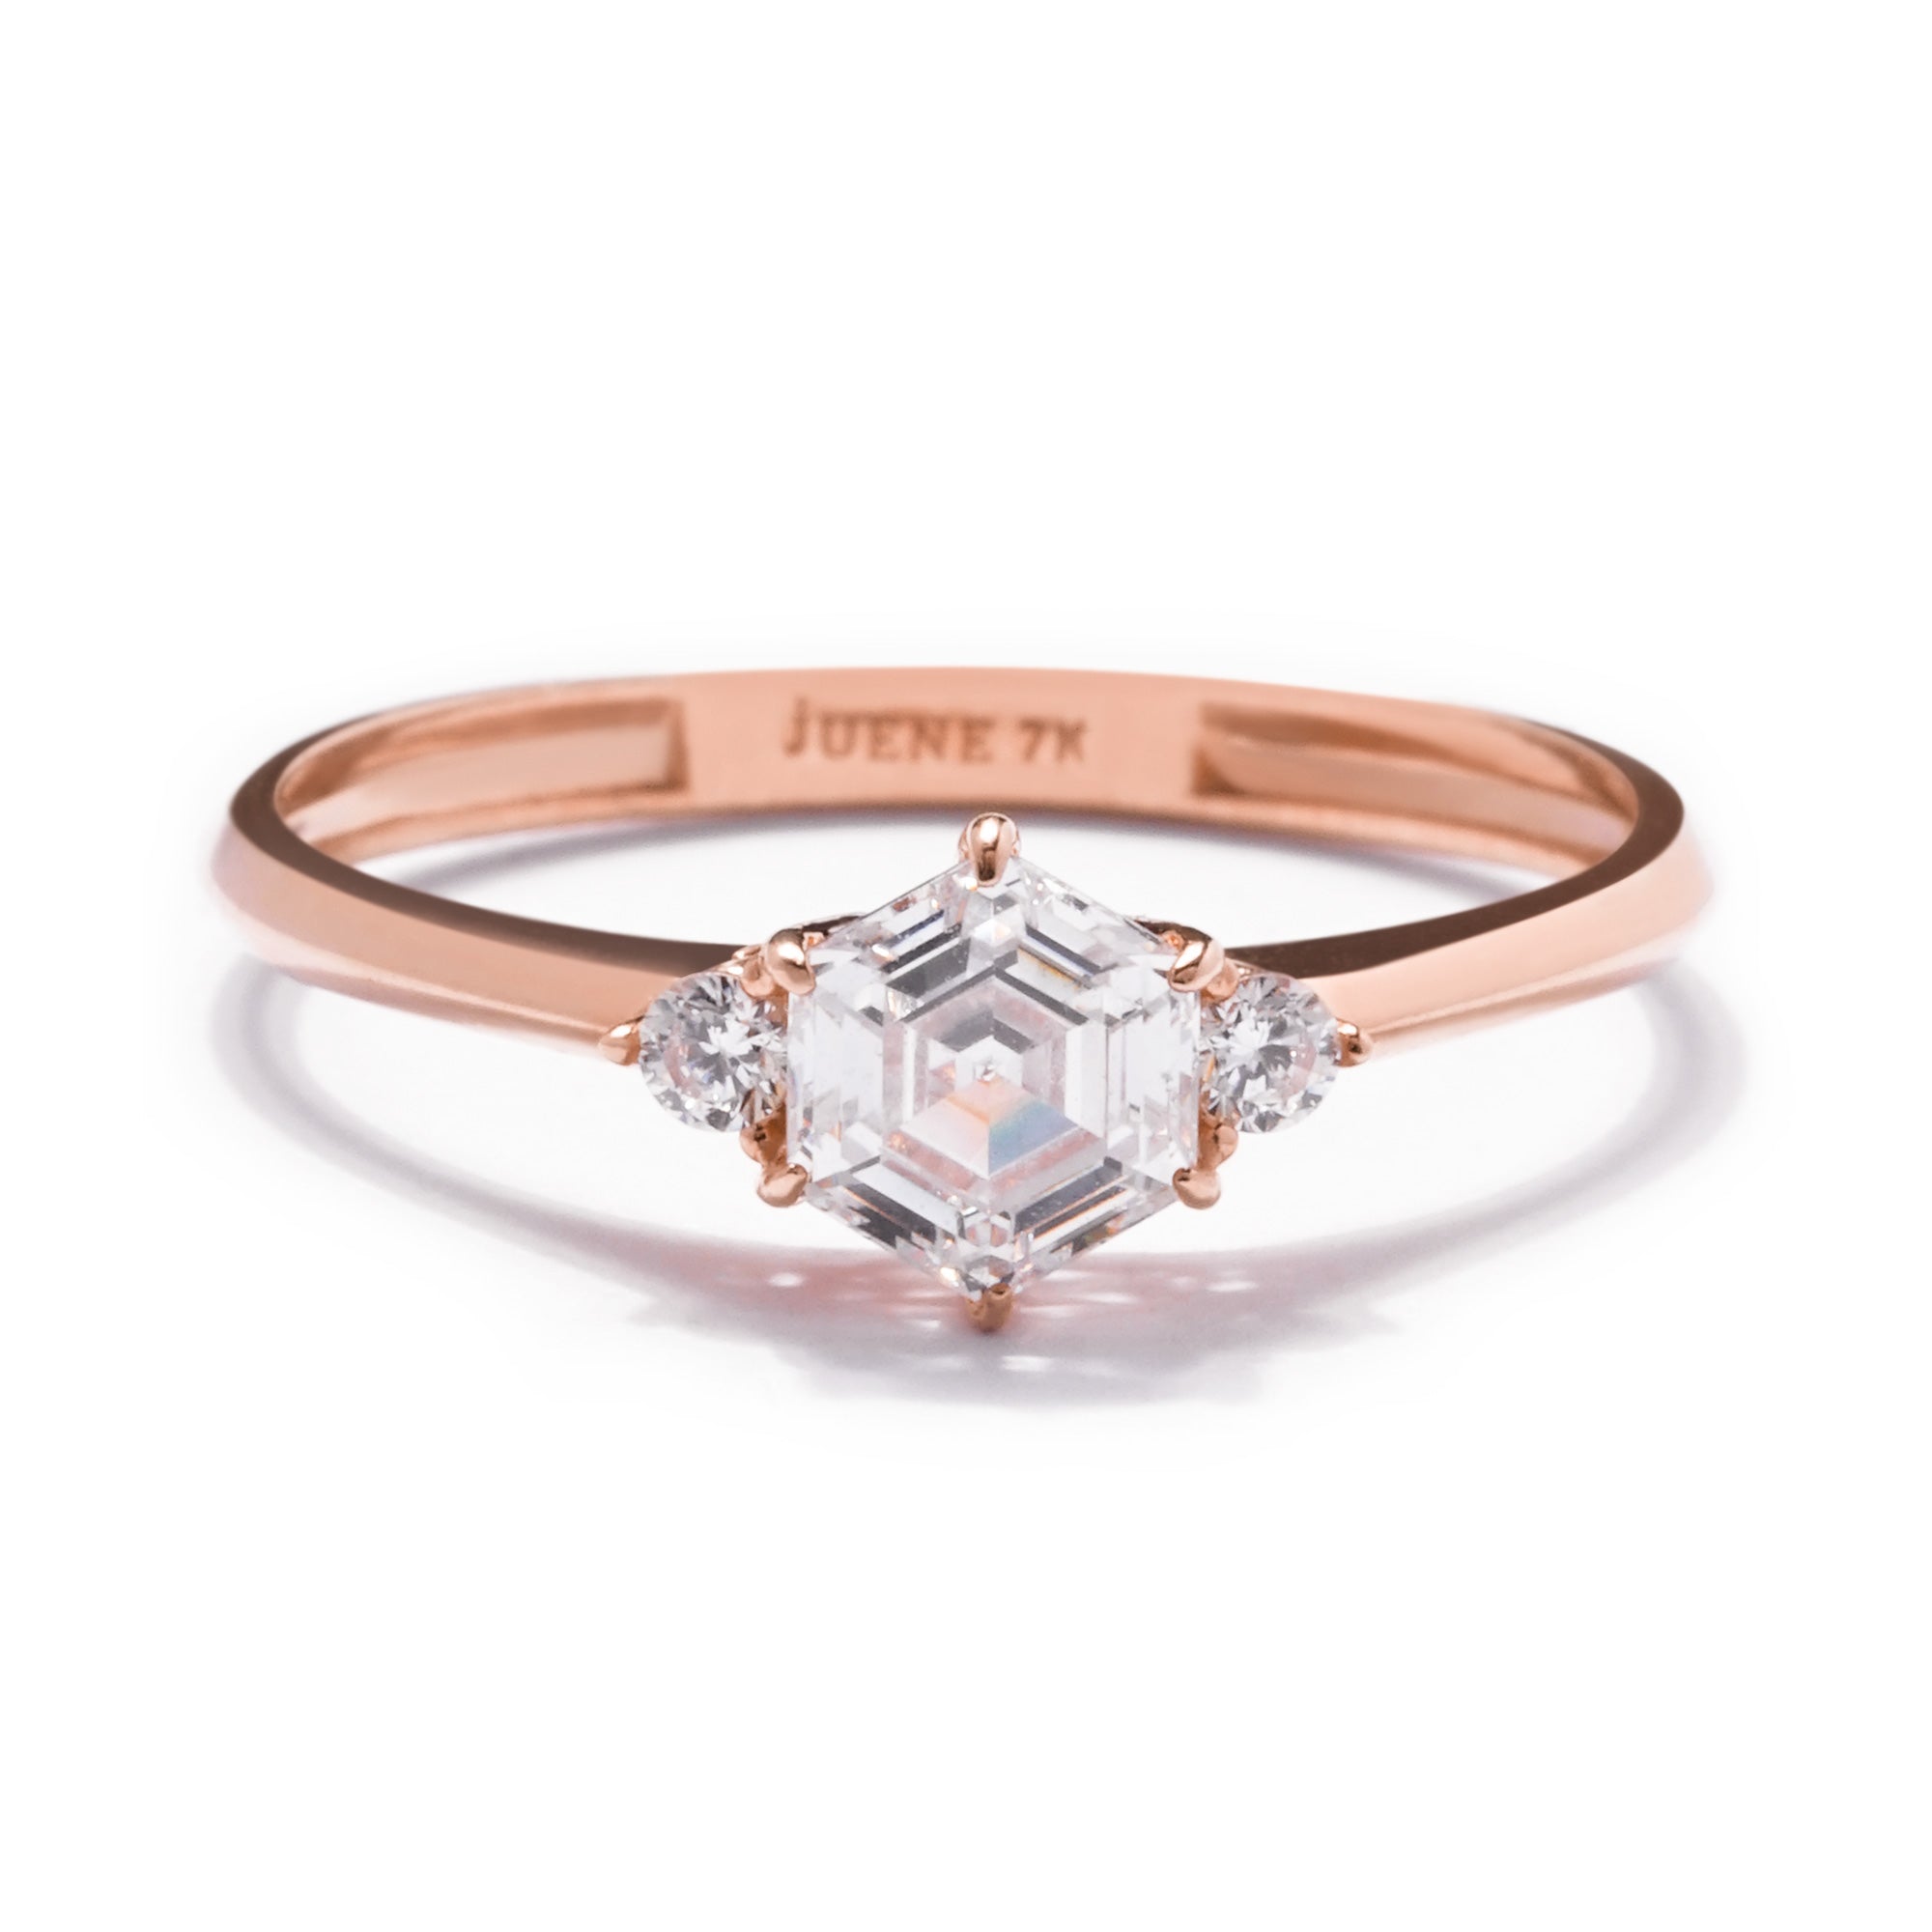 Elise Gold Ring - Sparkle & Joy - Juene Jewelry